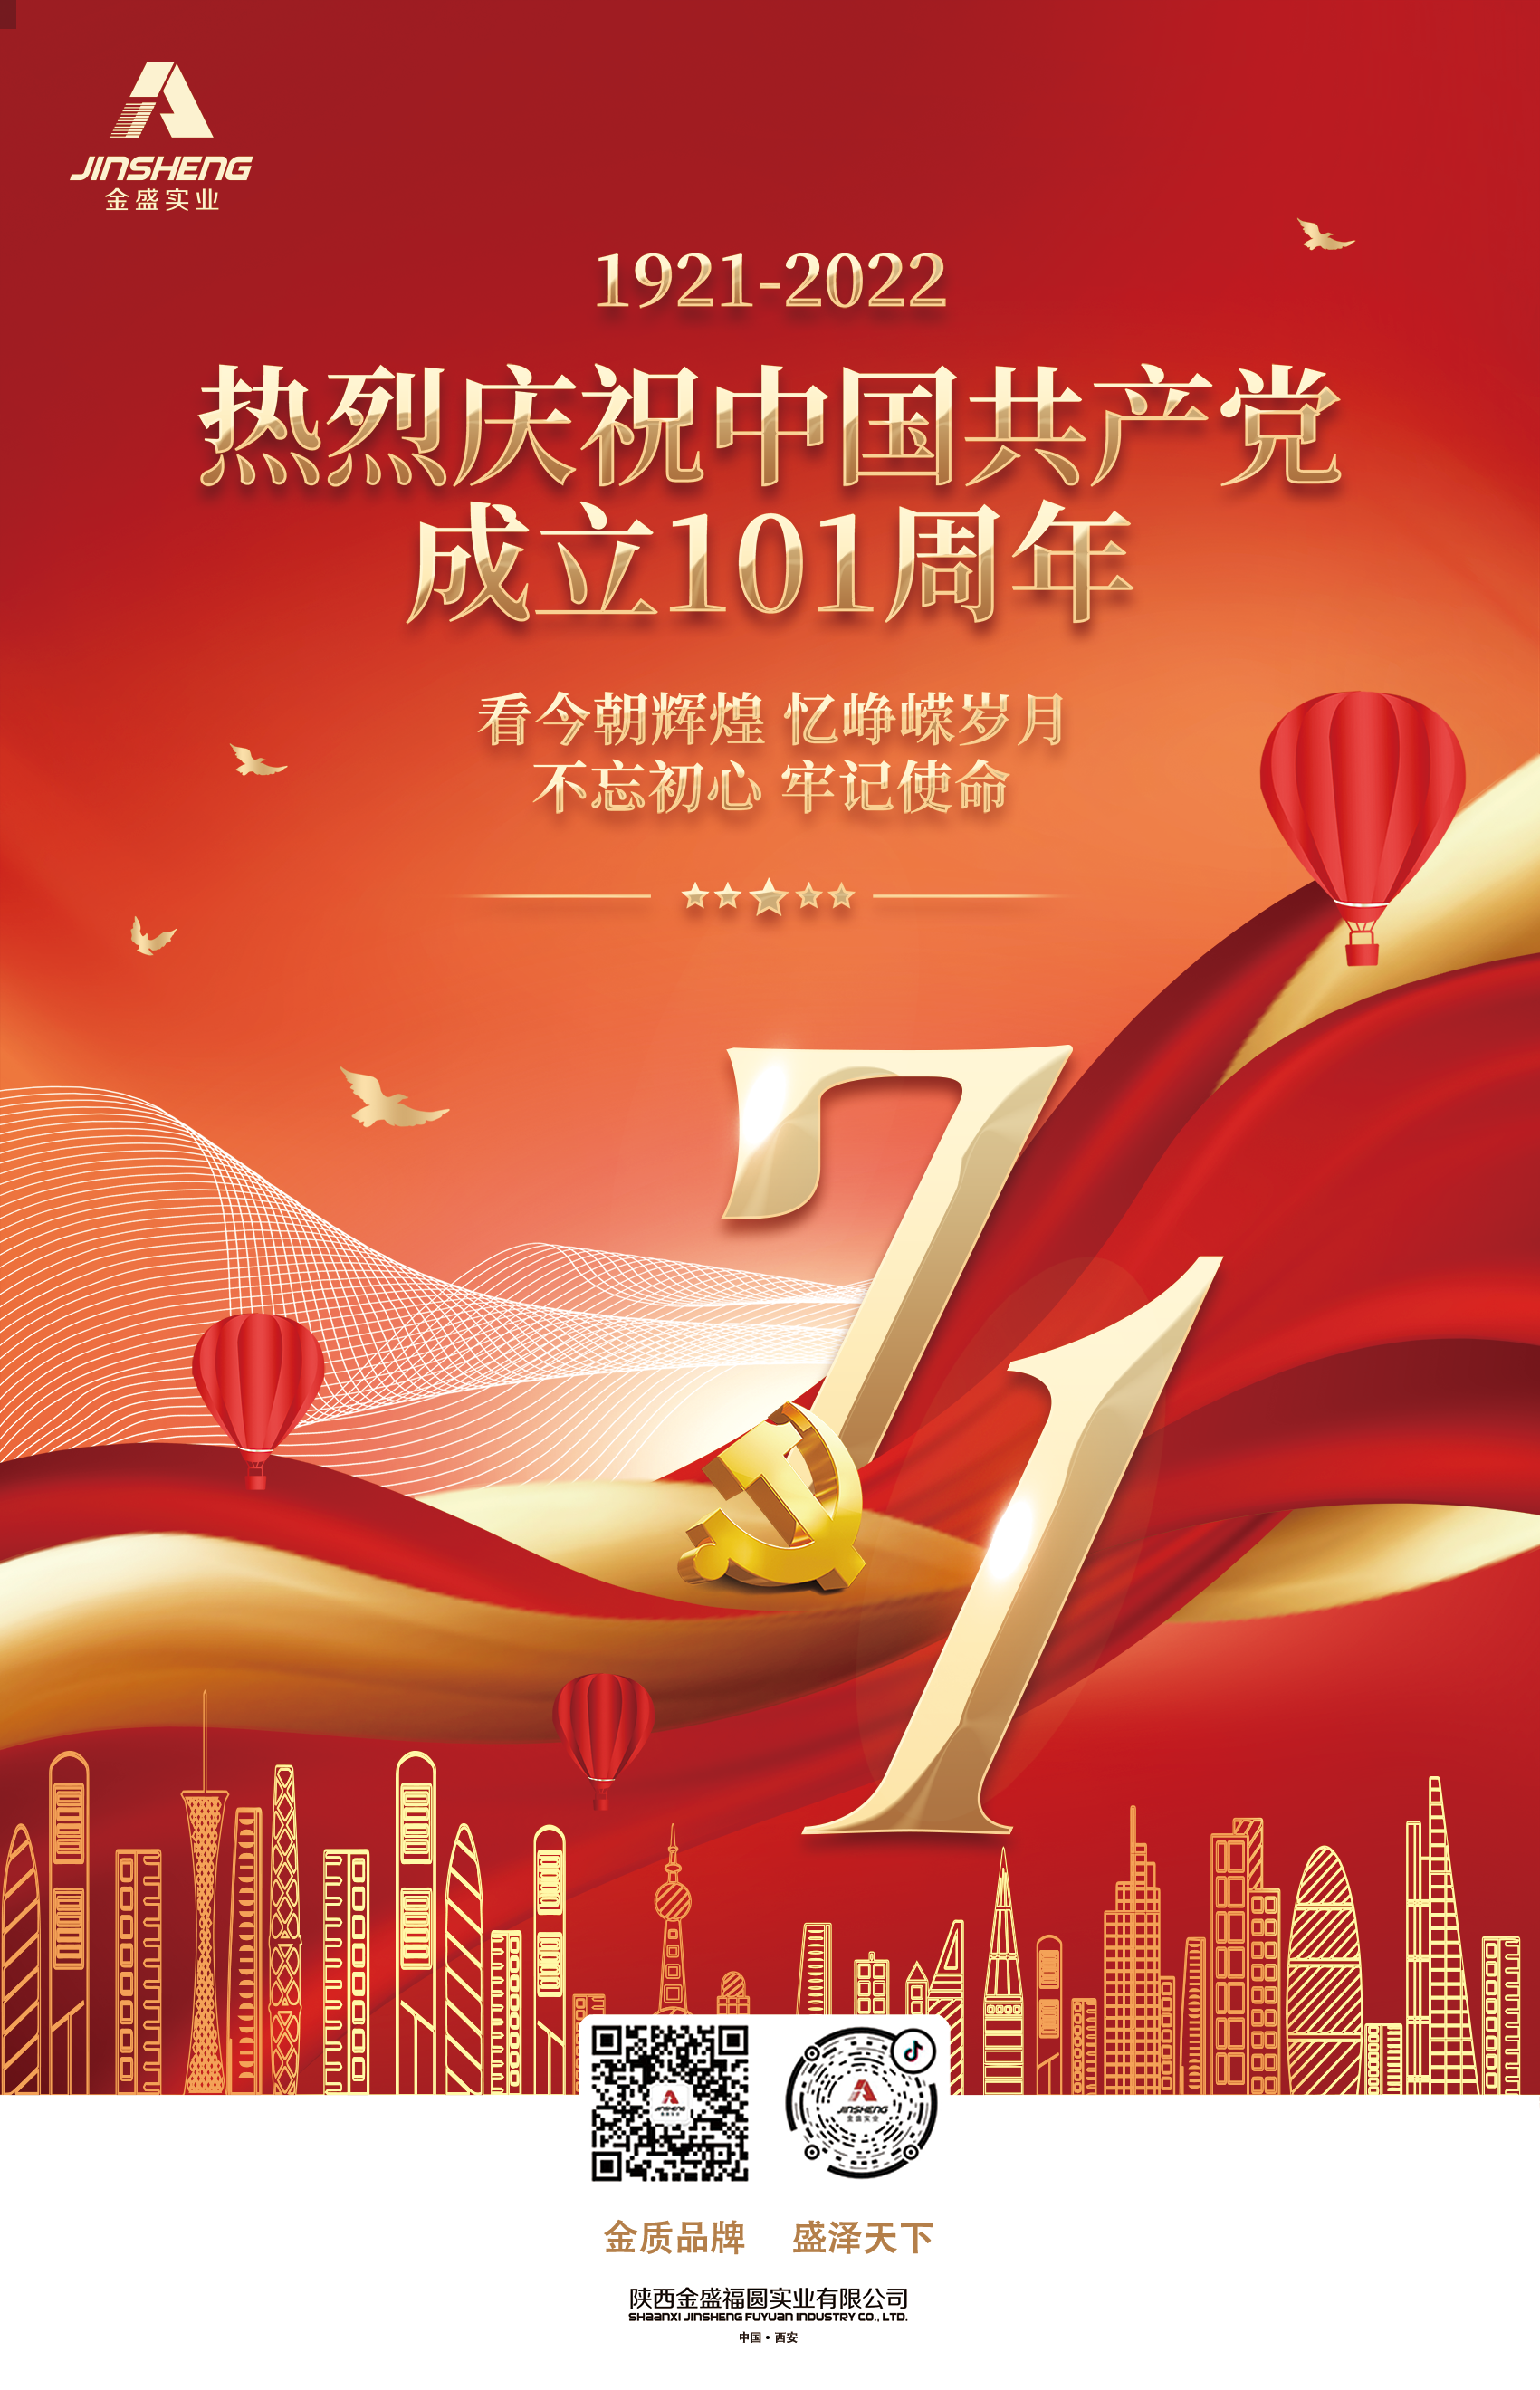 陕西金盛祝贺中国共产党成立101周年(图1)